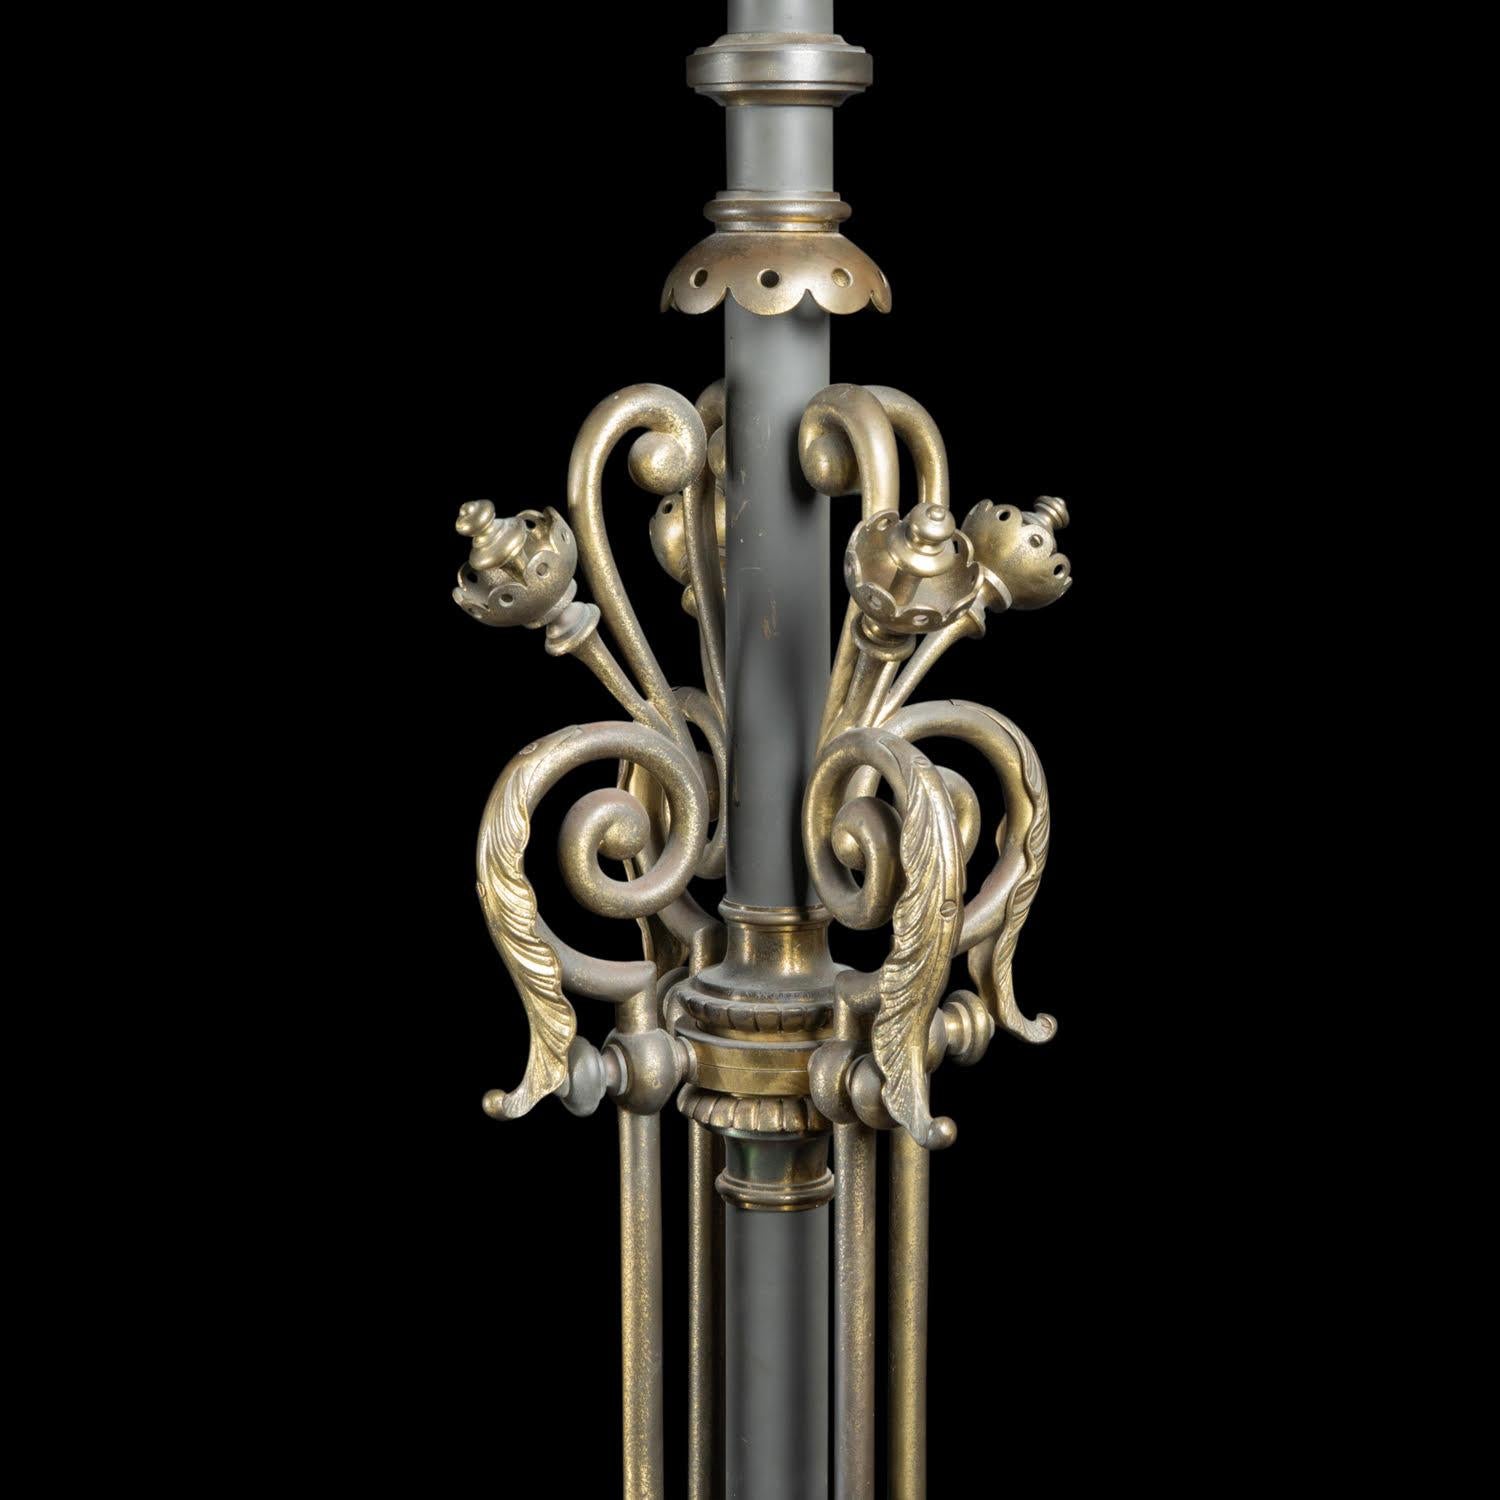 Paire de torchères, période Napoléon III, XIXe siècle.

Paire de torchères en bronze avec base en acajou, période Napoléon III, 19e siècle.  
H : 188cm, L : 44.5cm, P : 44.5cm